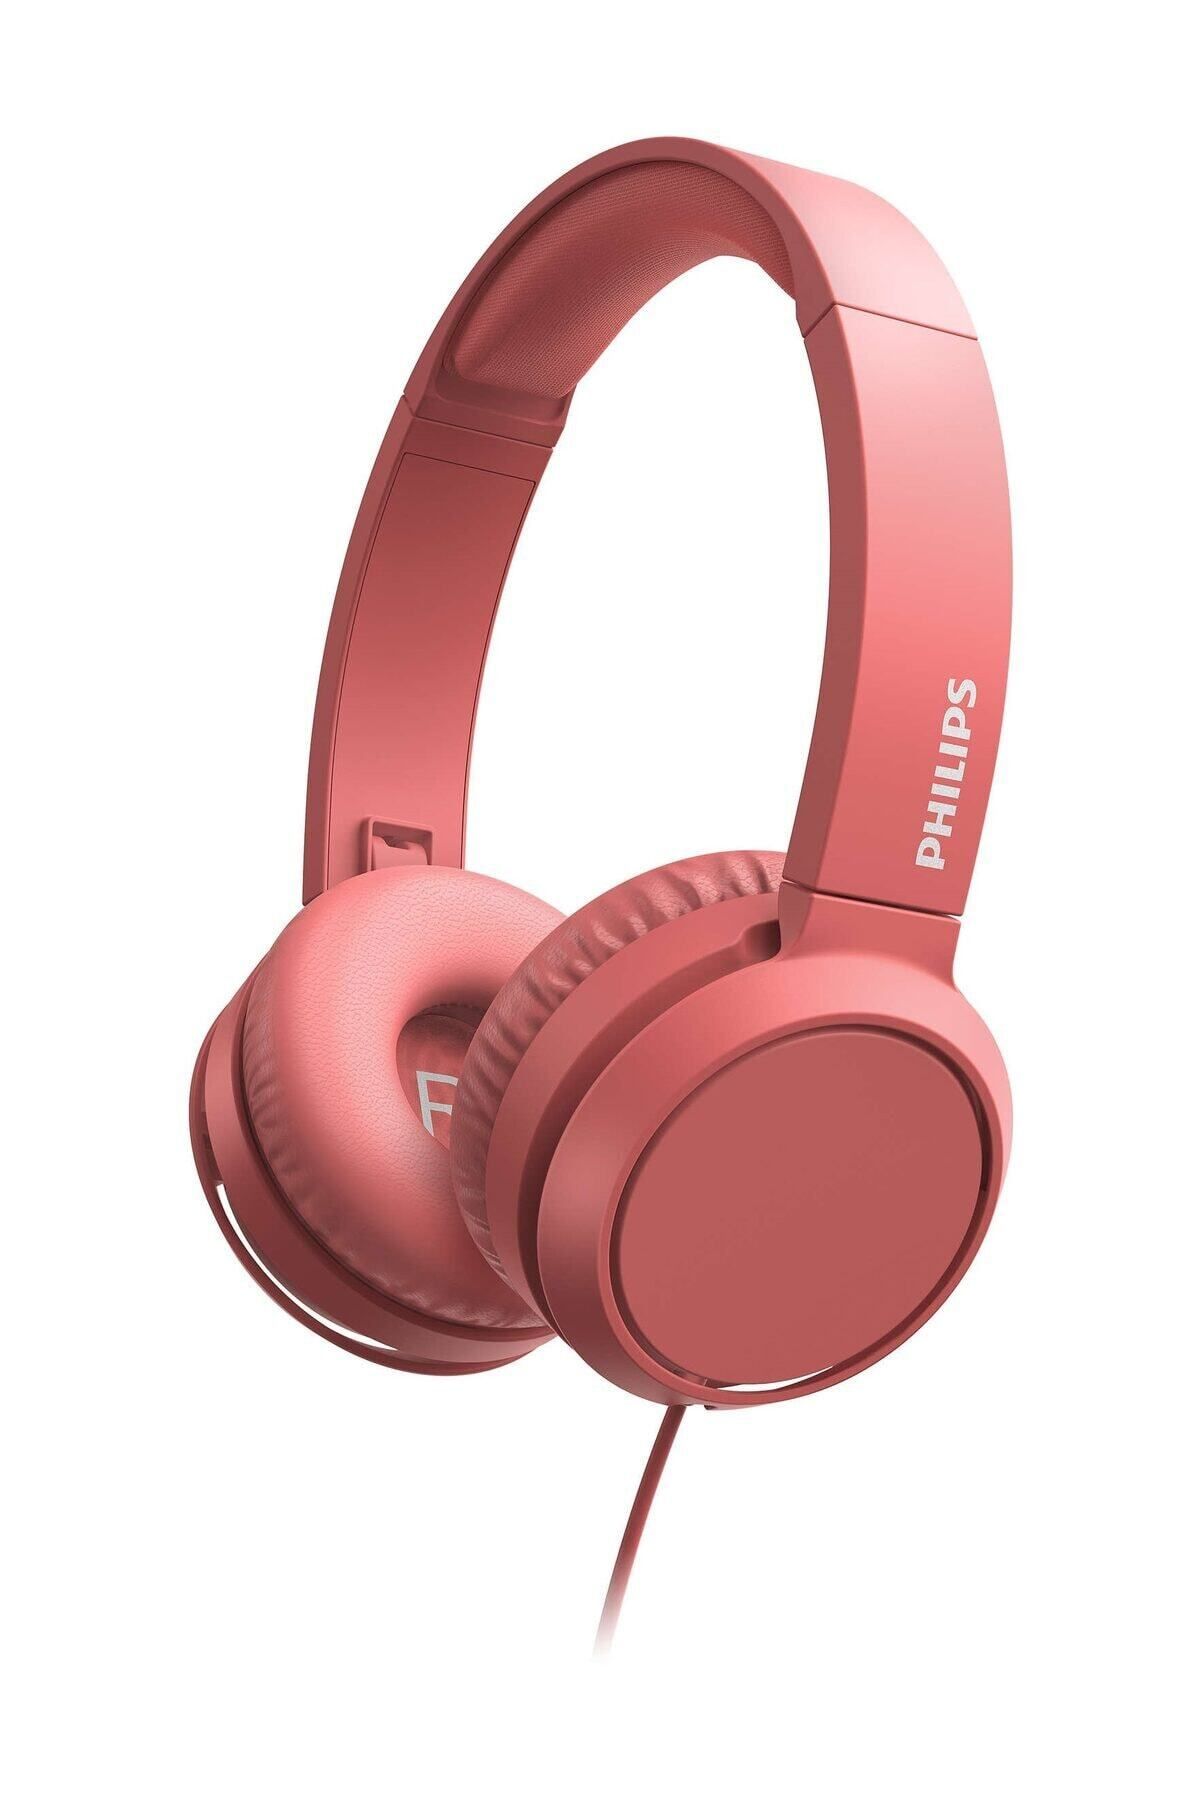 Philips Tah4105rd Kırmızı Mikrofonlu Kablolu Kulak Üstü Kulaklık